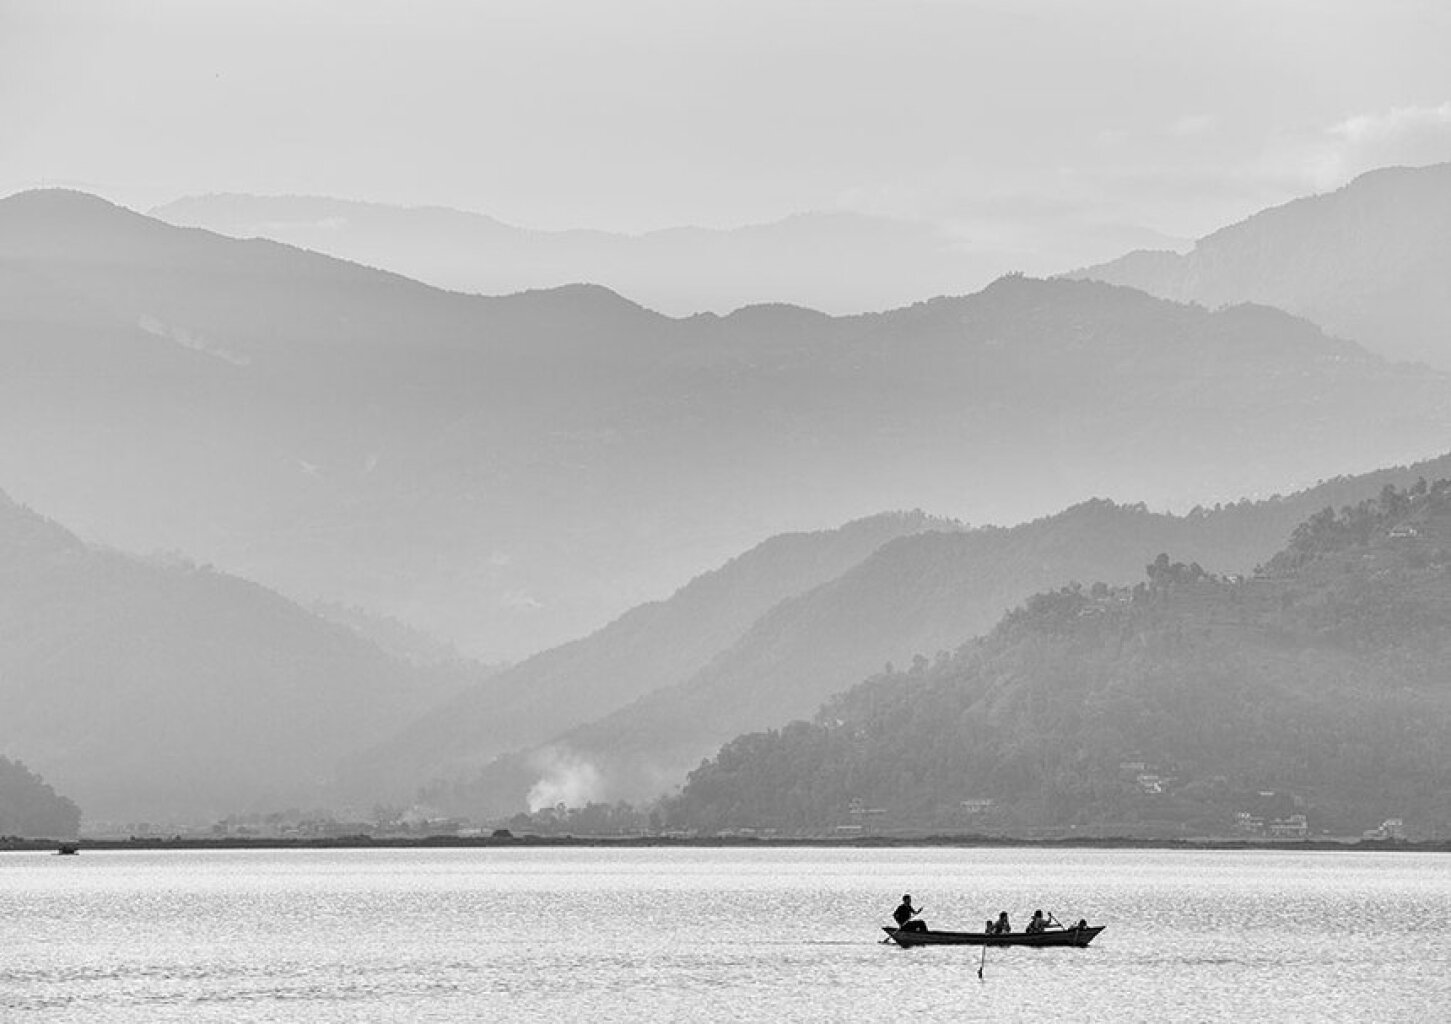 Quadro Lake Pokhara 2 por Felipe Hoffmann -  CATEGORIAS